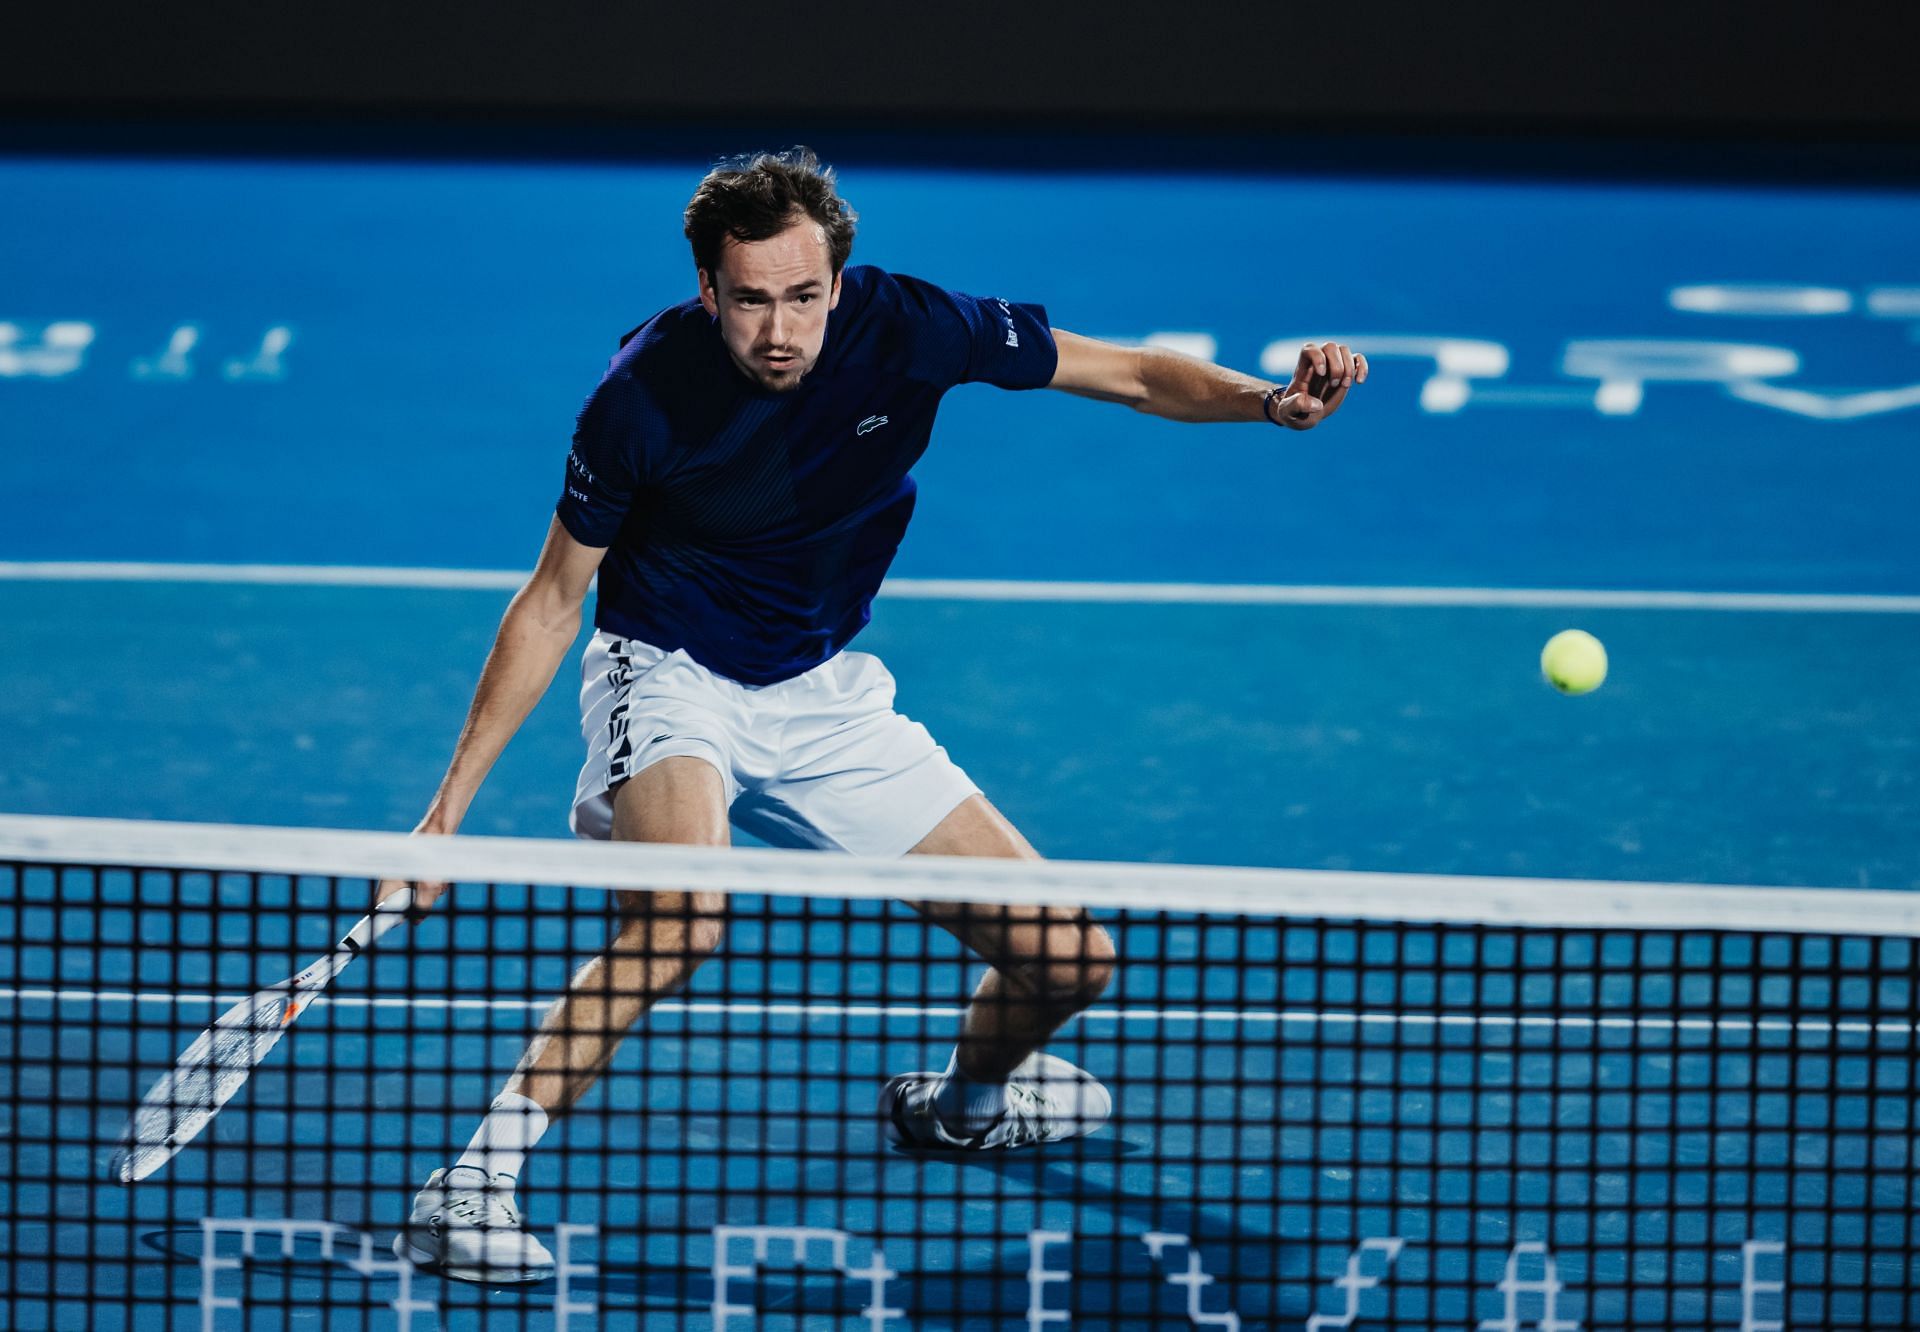 Daniil Medvedev in action at the Diriyah Tennis Cup